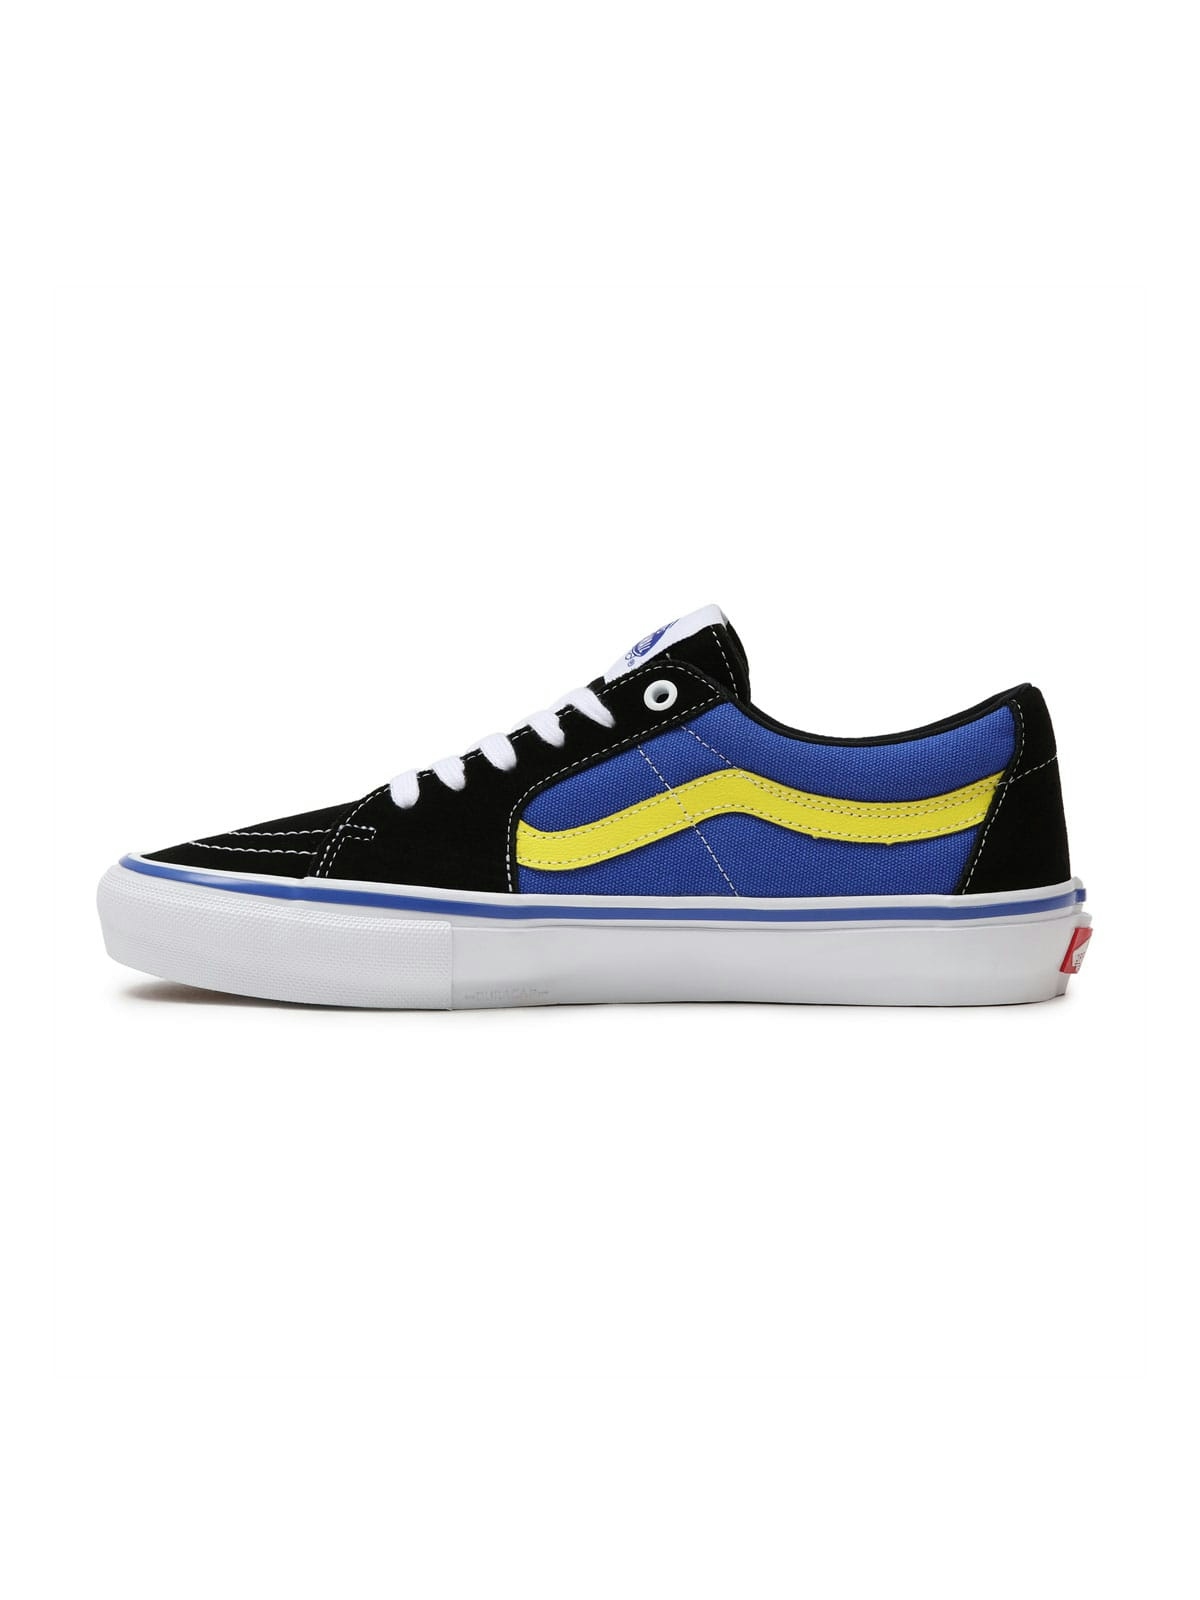 Vans Skate SK8-Low Shoes Black/Dazzling Blue 3